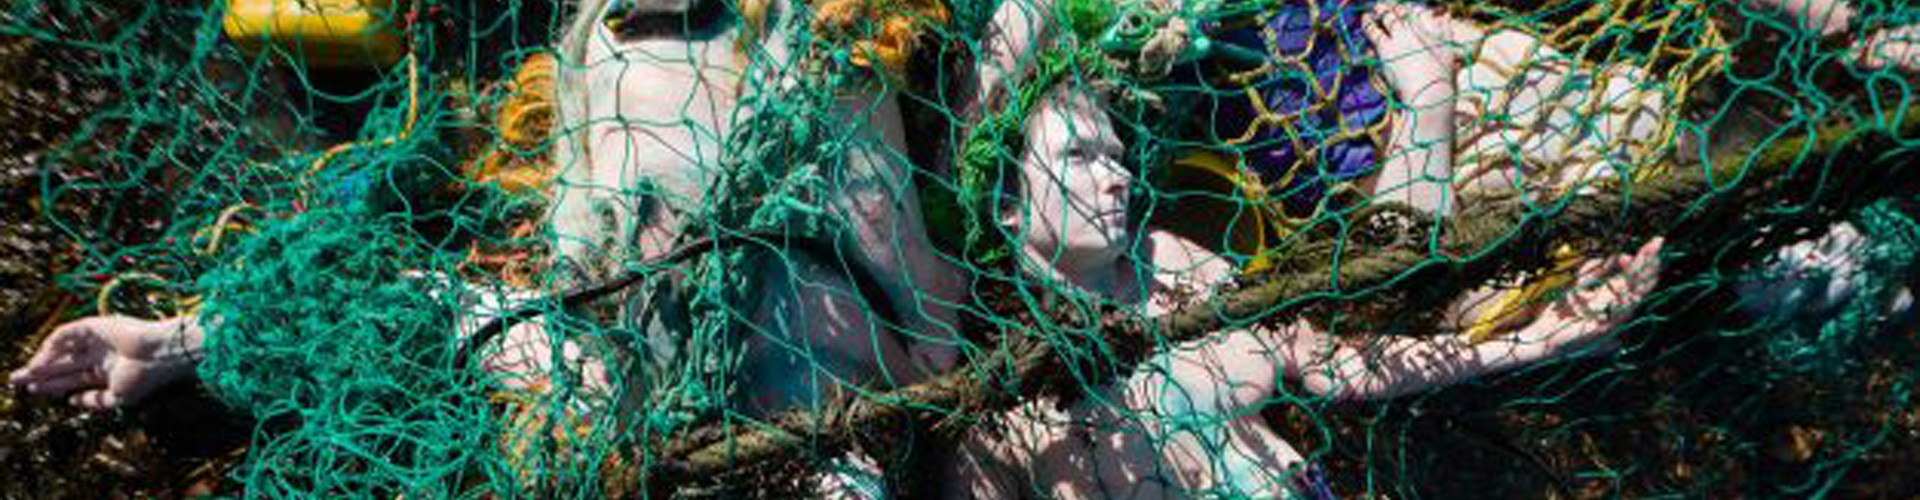 mermaids in fishing nets